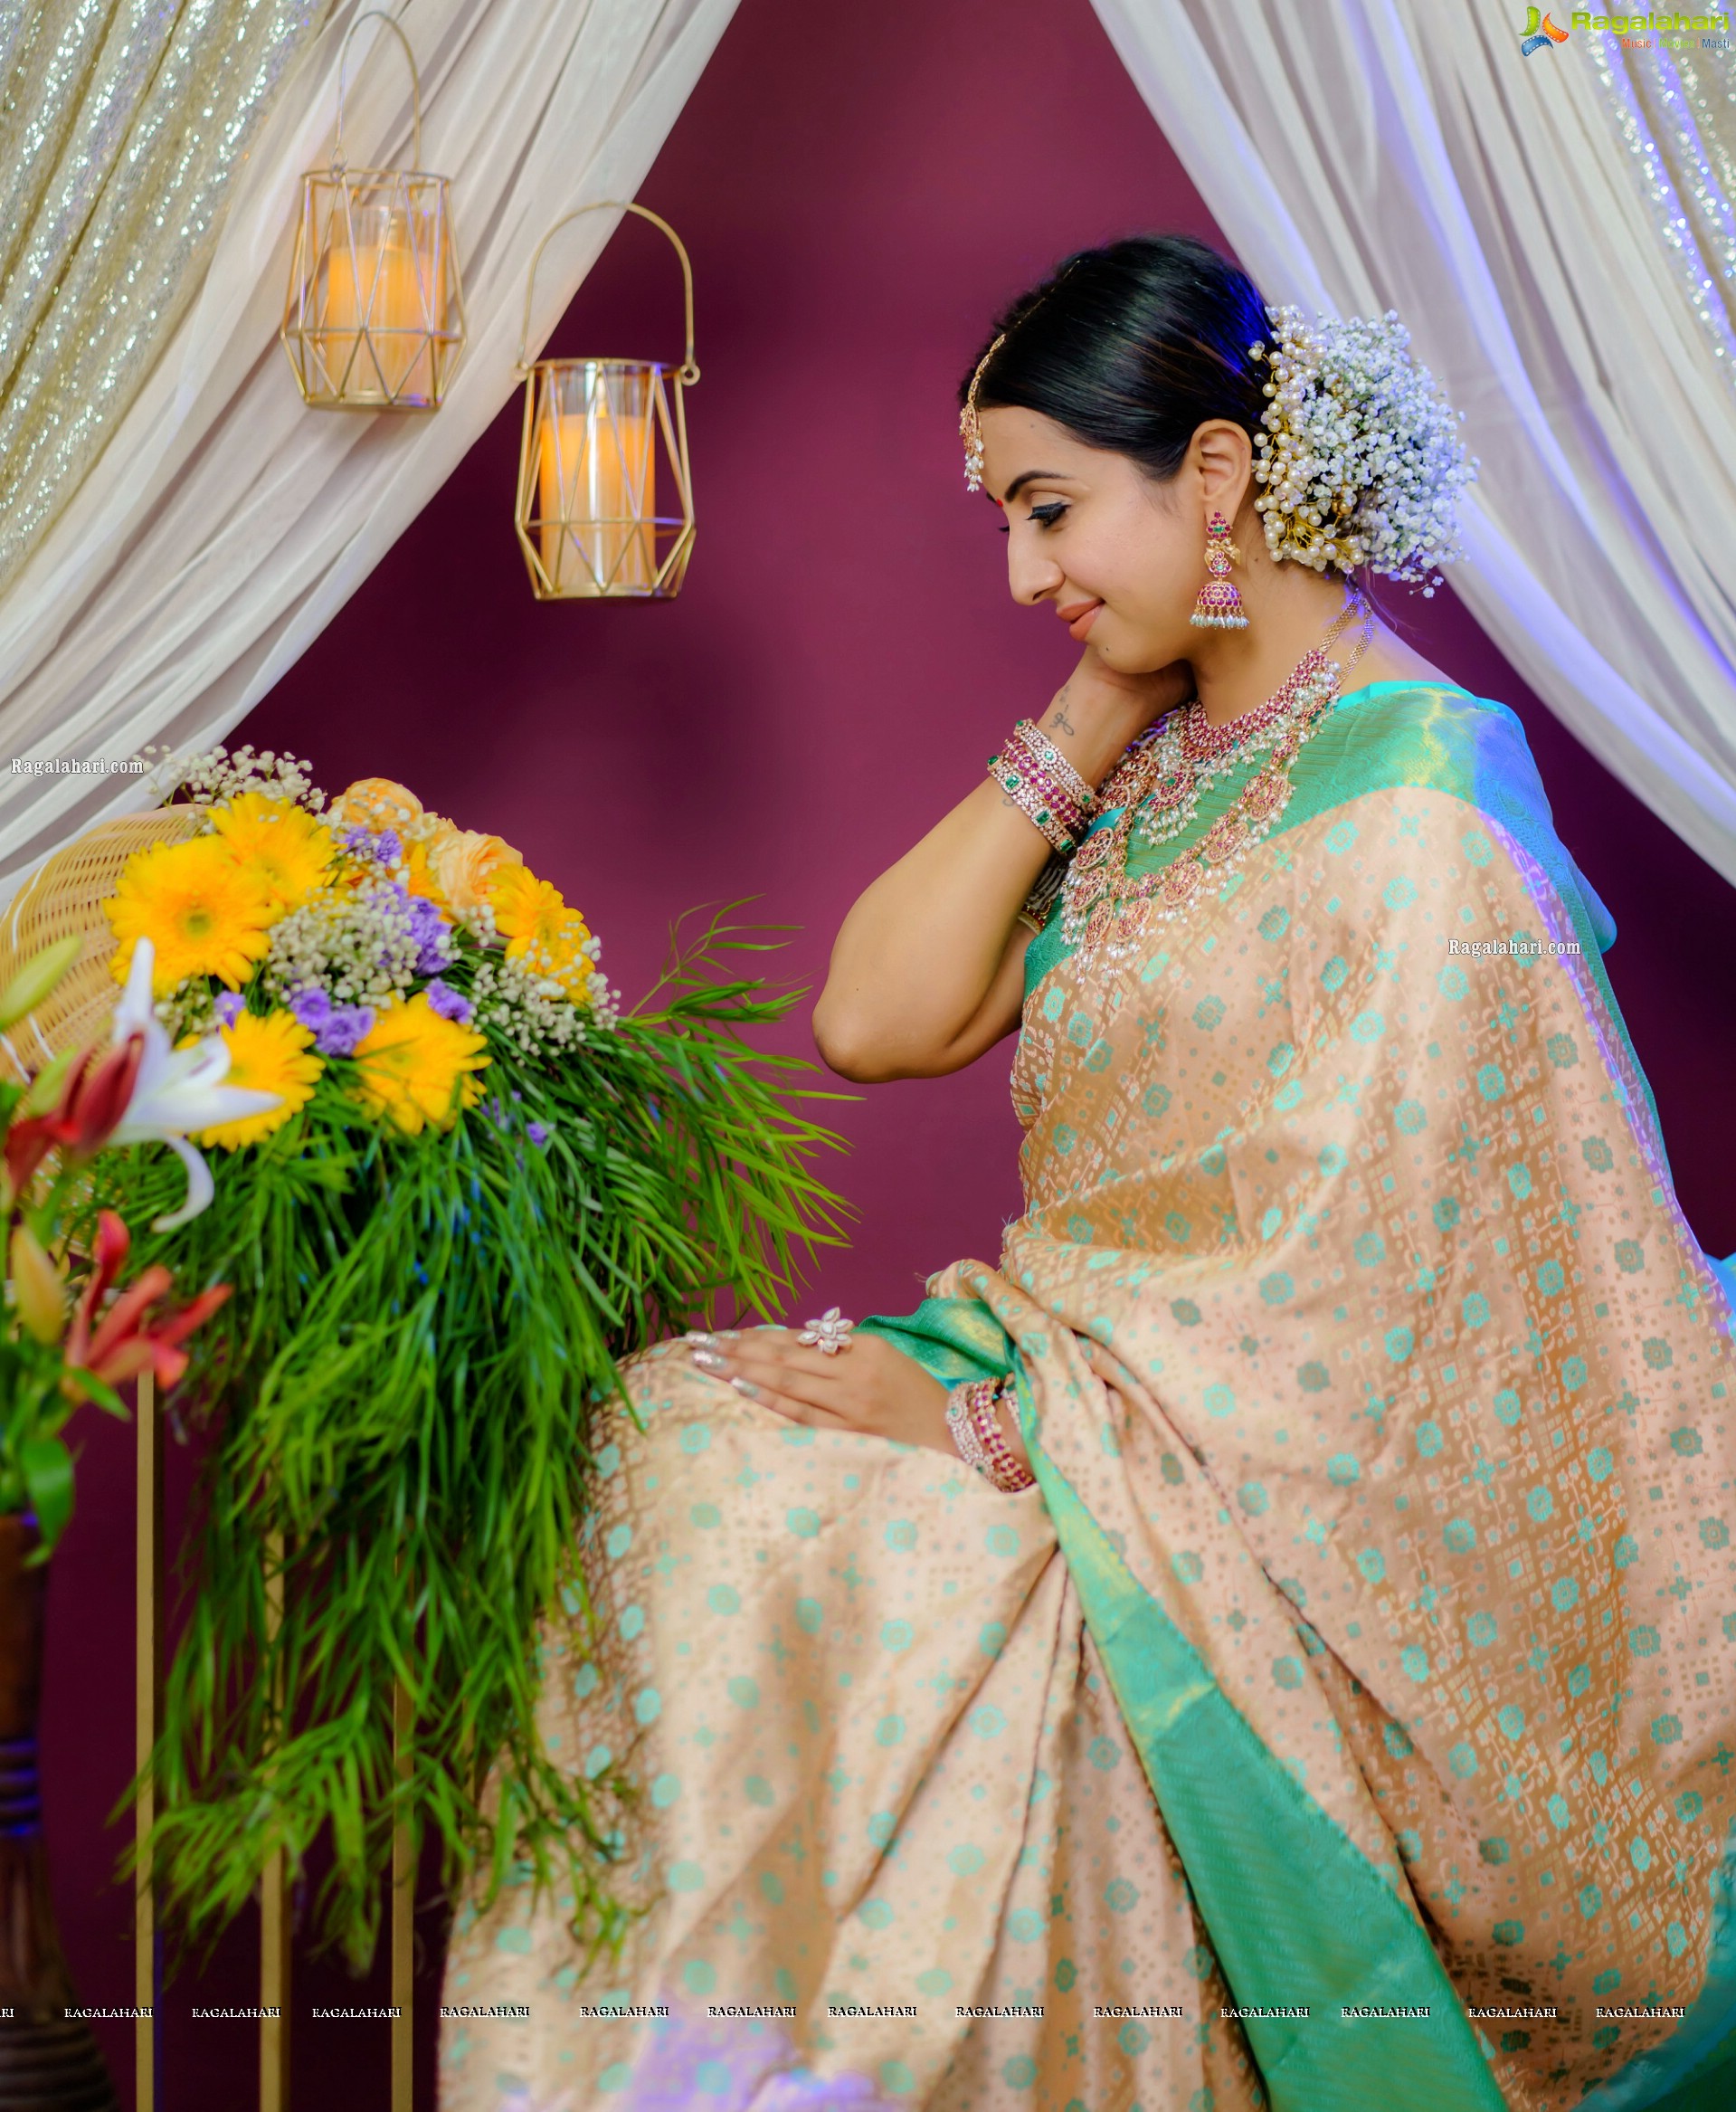 Sanjjanaa Galrani in Traditional White Saree, HD Photo Gallery